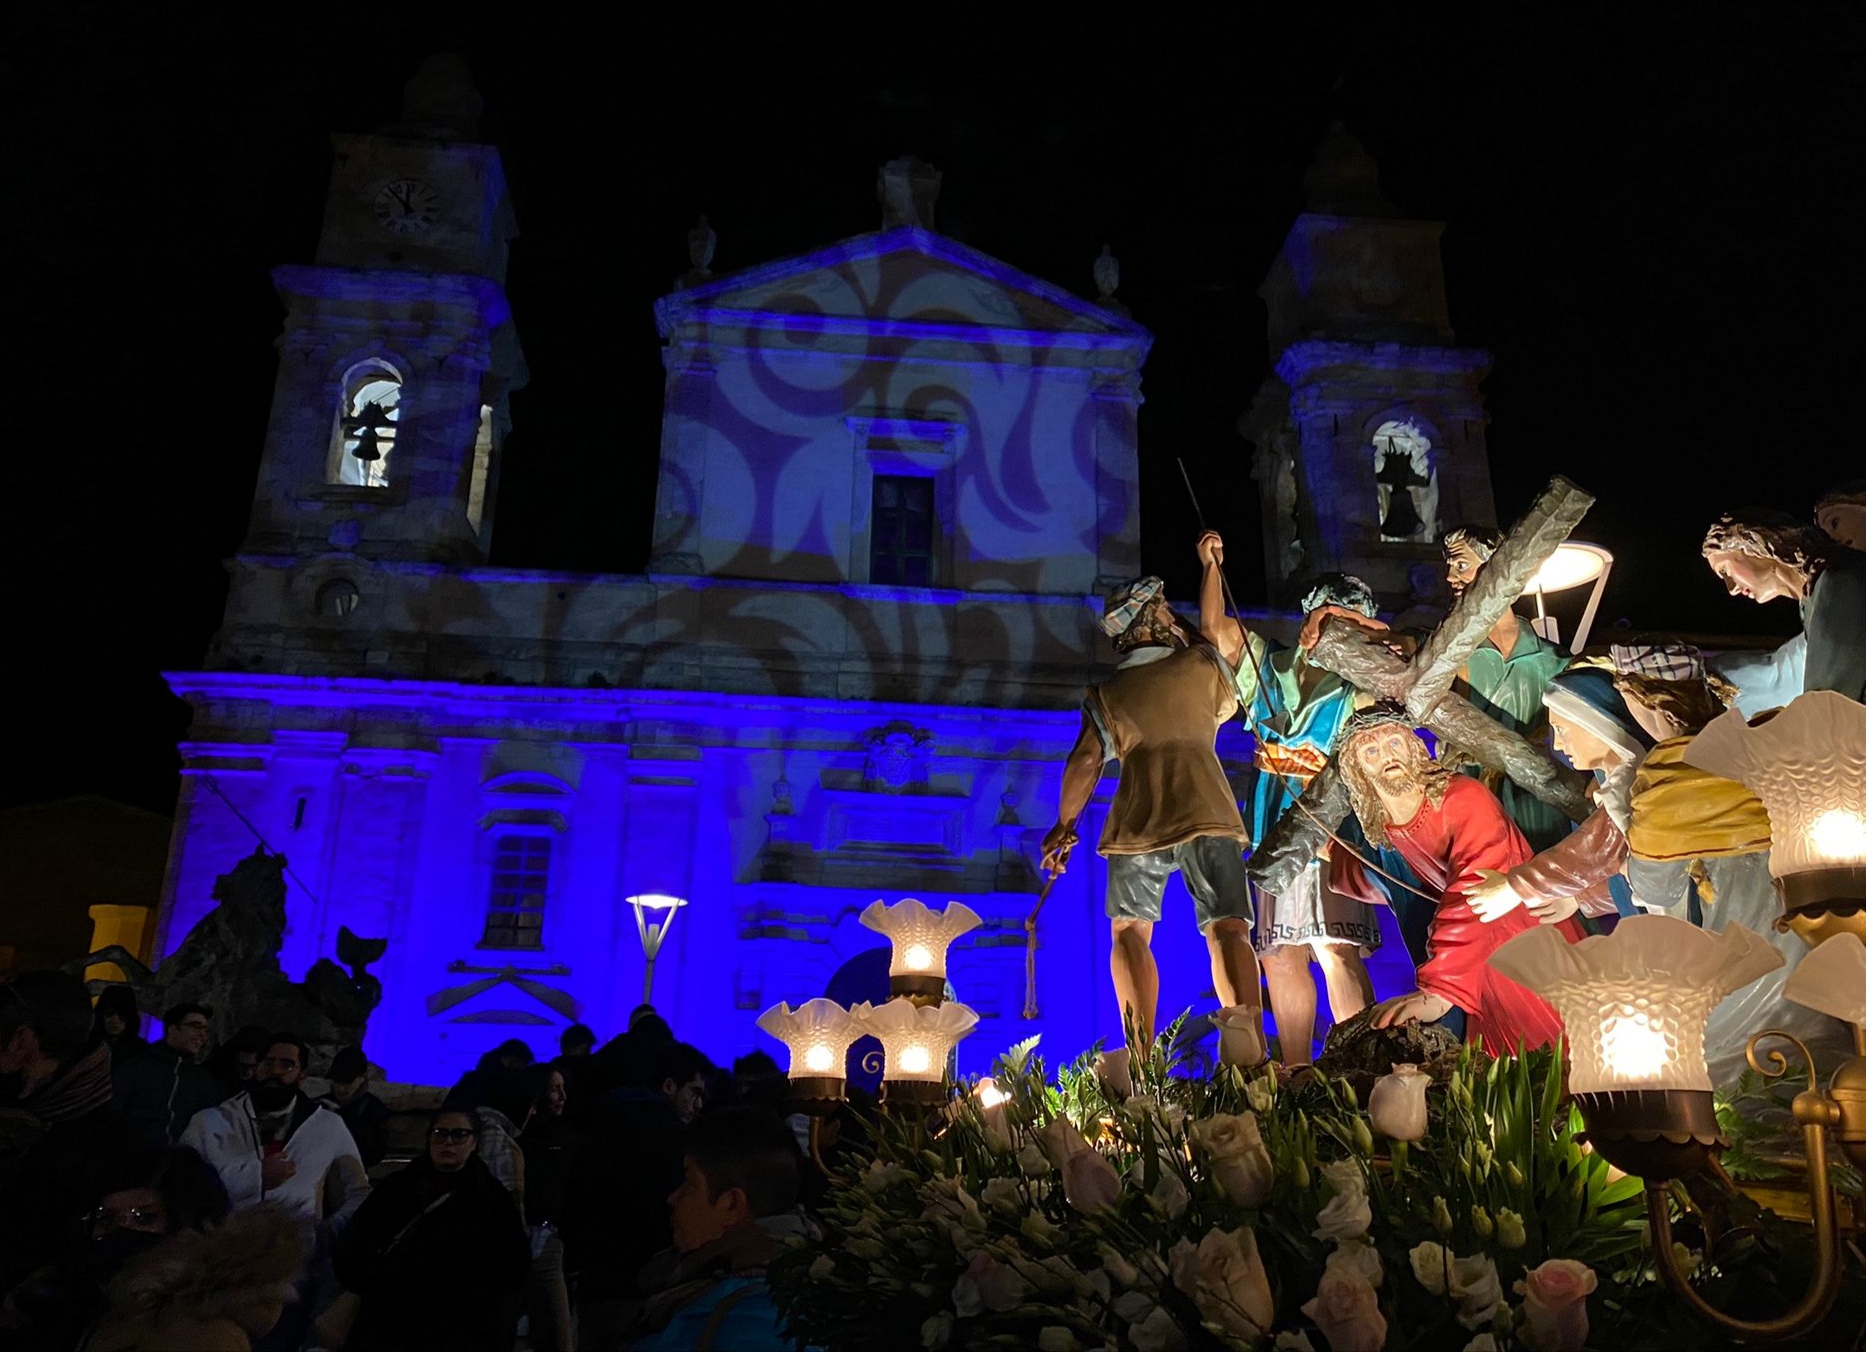 La Settimana Santa di Caltanissetta per la prima volta nel calendario “Grandi Eventi” della Regione Sicilia